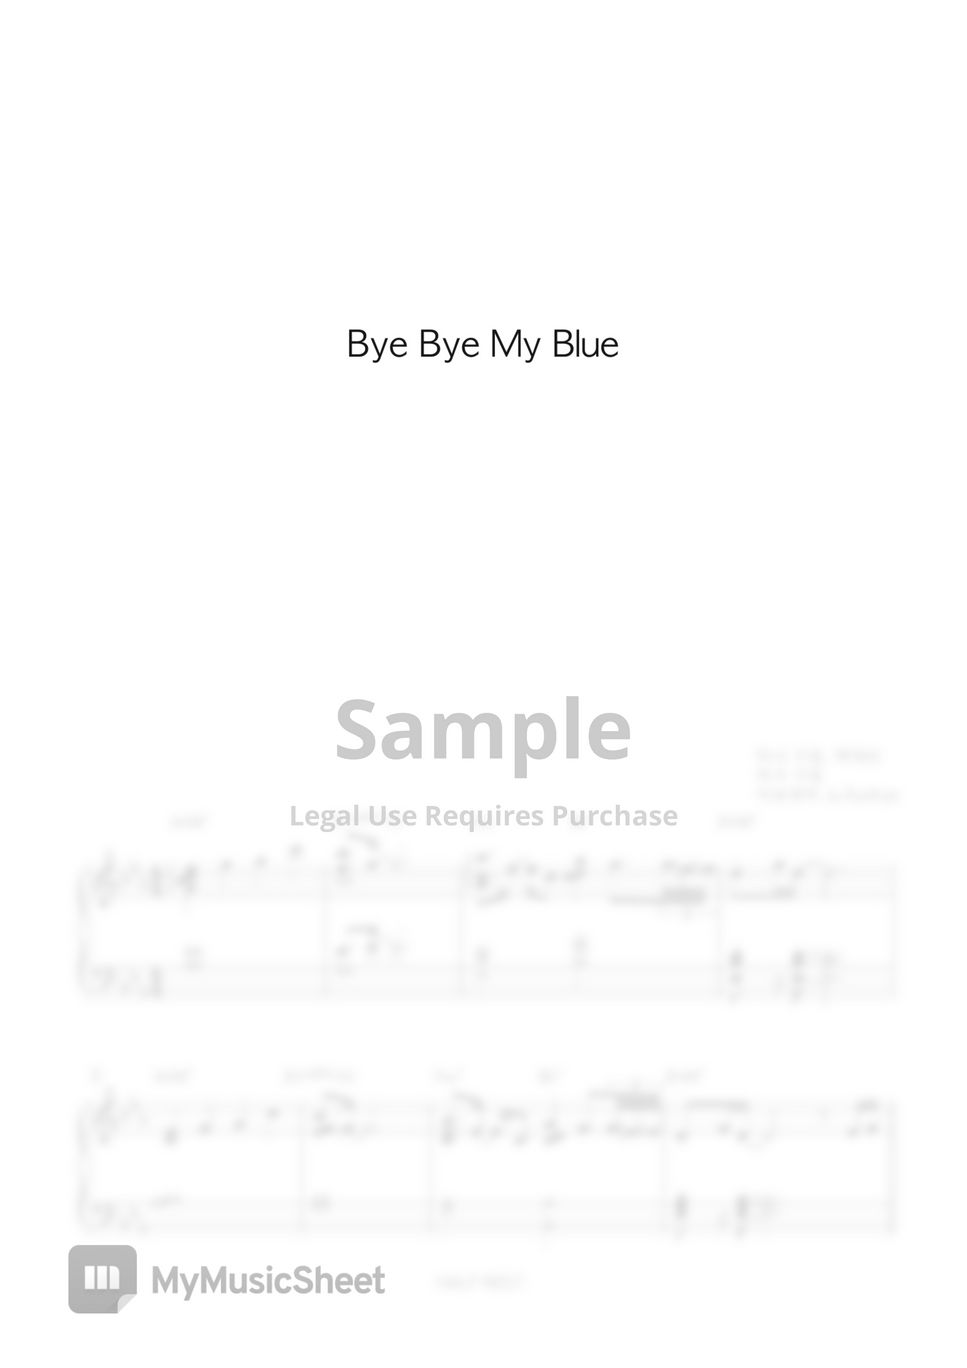 백예린(Yerin Baek) - Bye bye my blue (어려움/코드포함) by Ju Eunhy